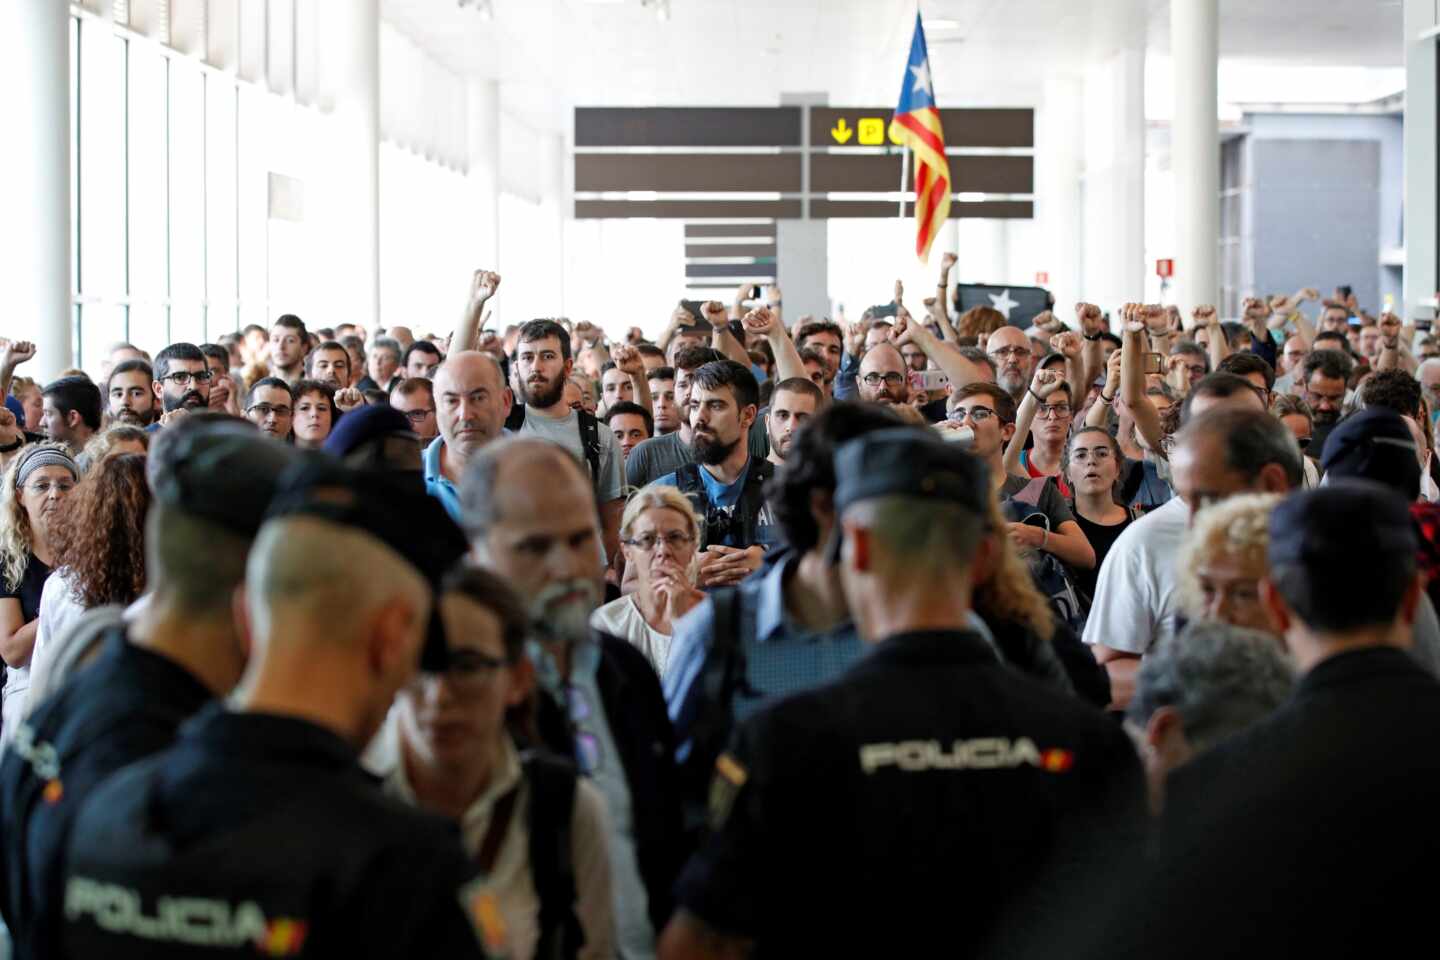 Los Mossos advierten a los manifestantes: asaltar el aeropuerto es un "delito grave"